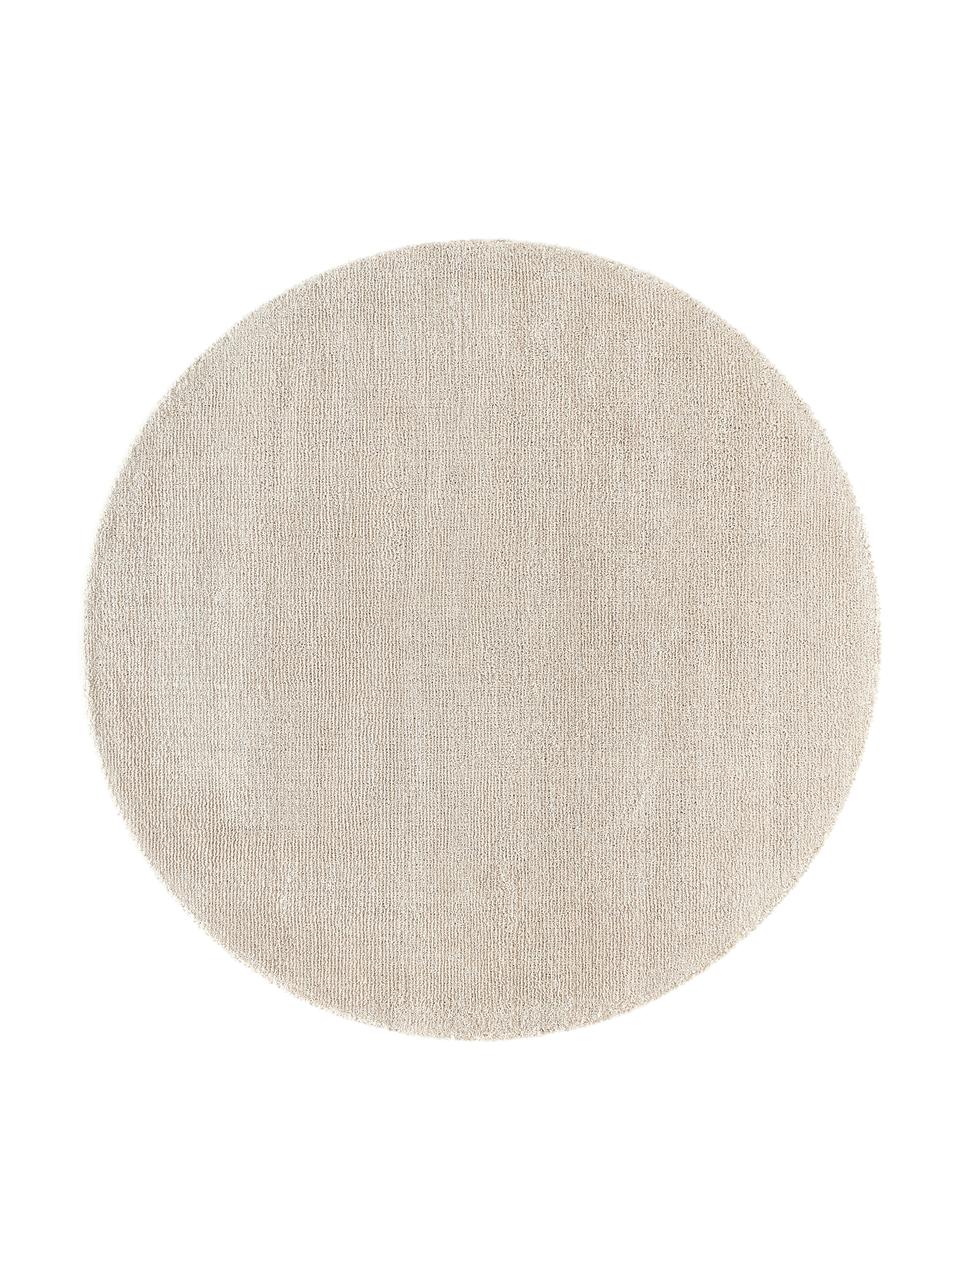 Handgeweven rond kortpolig vloerkleed Ainsley in beige, 60% polyester, GRS-gecertificeerd
40% wol, Beige, Ø 120 cm (maat S)